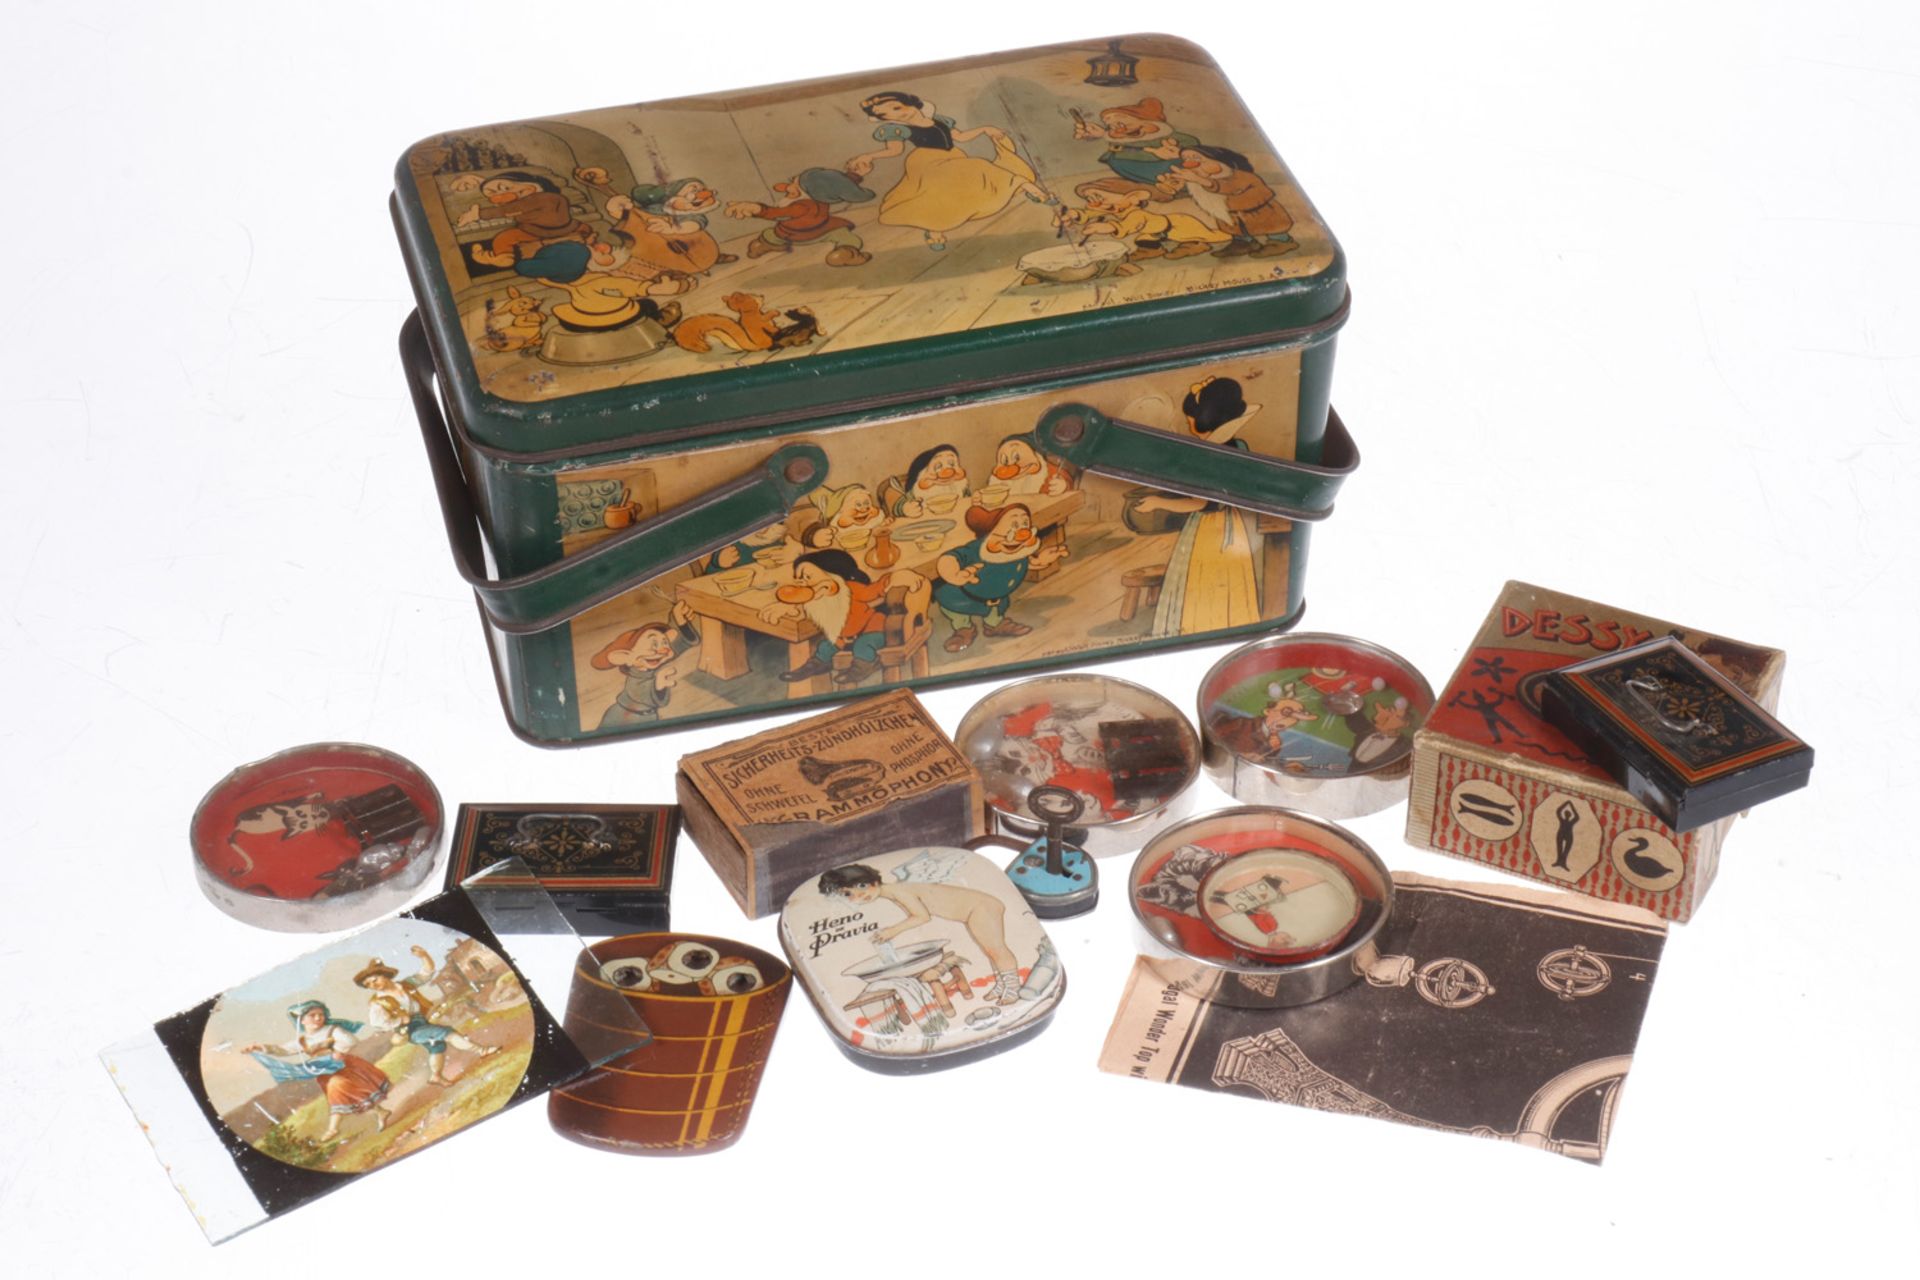 Walt Disney Blechkorb, lithographiert, mit verschiedenen Geduldsspielen und Scherzartikeln, darunter